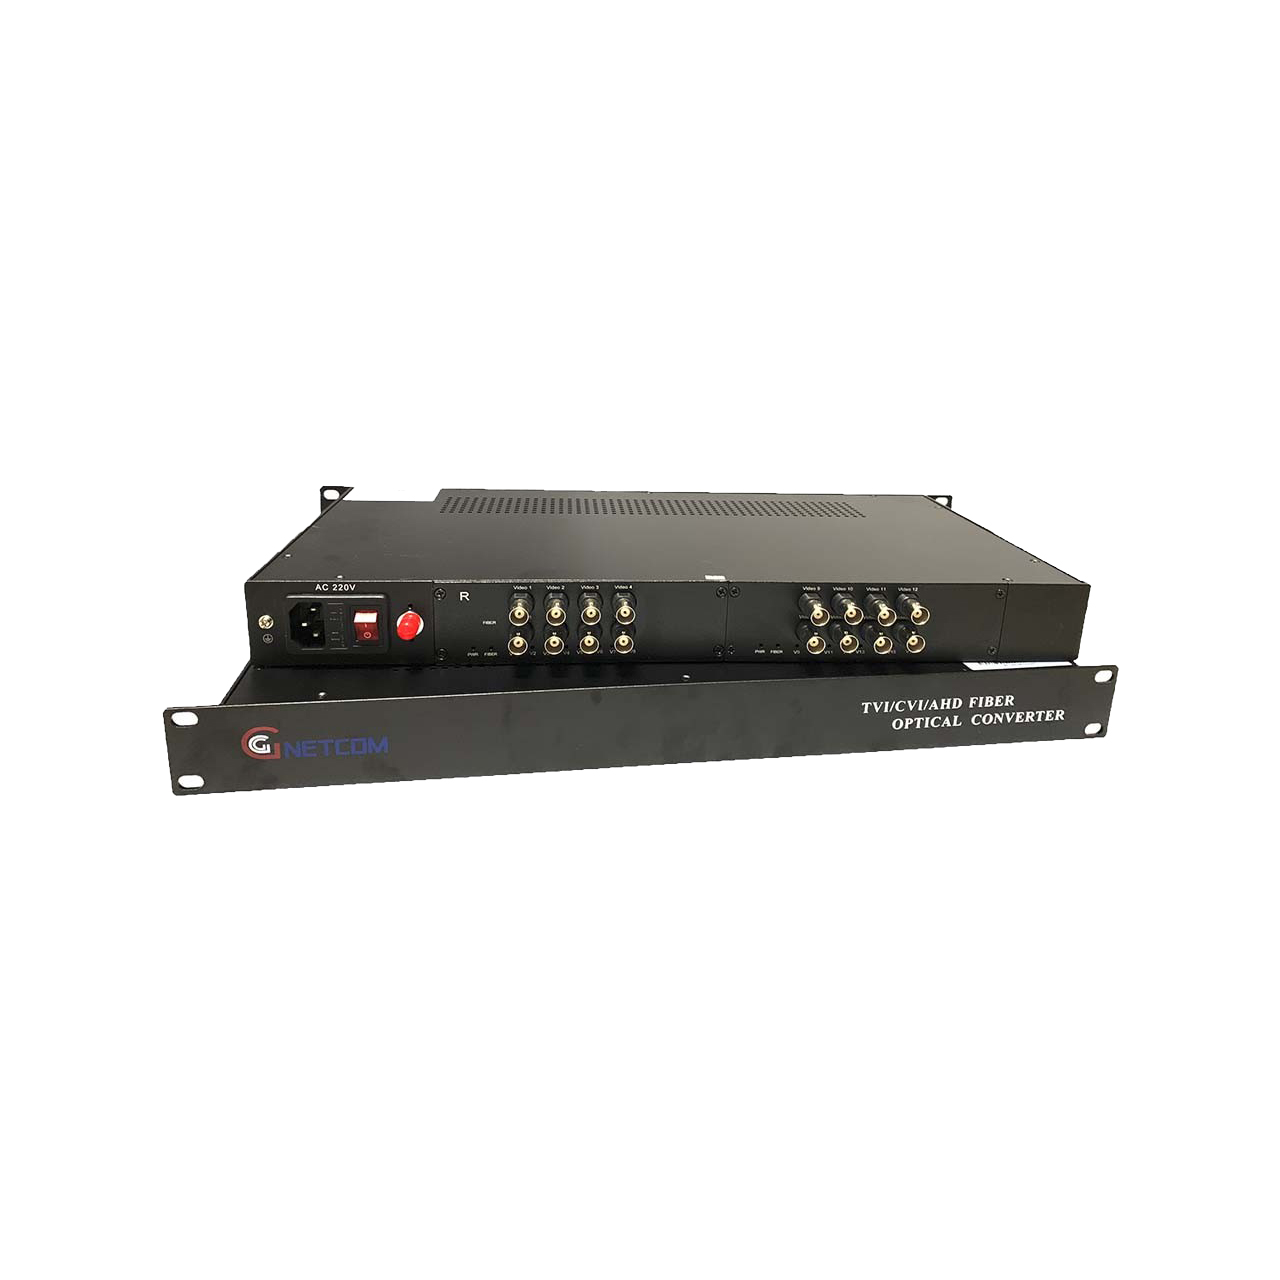 Bộ chuyển đổi quang Video 16 kênh GNETCOM HL-16V-20T/R-720P (2 thiết bị) - Hàng Chính Hãng